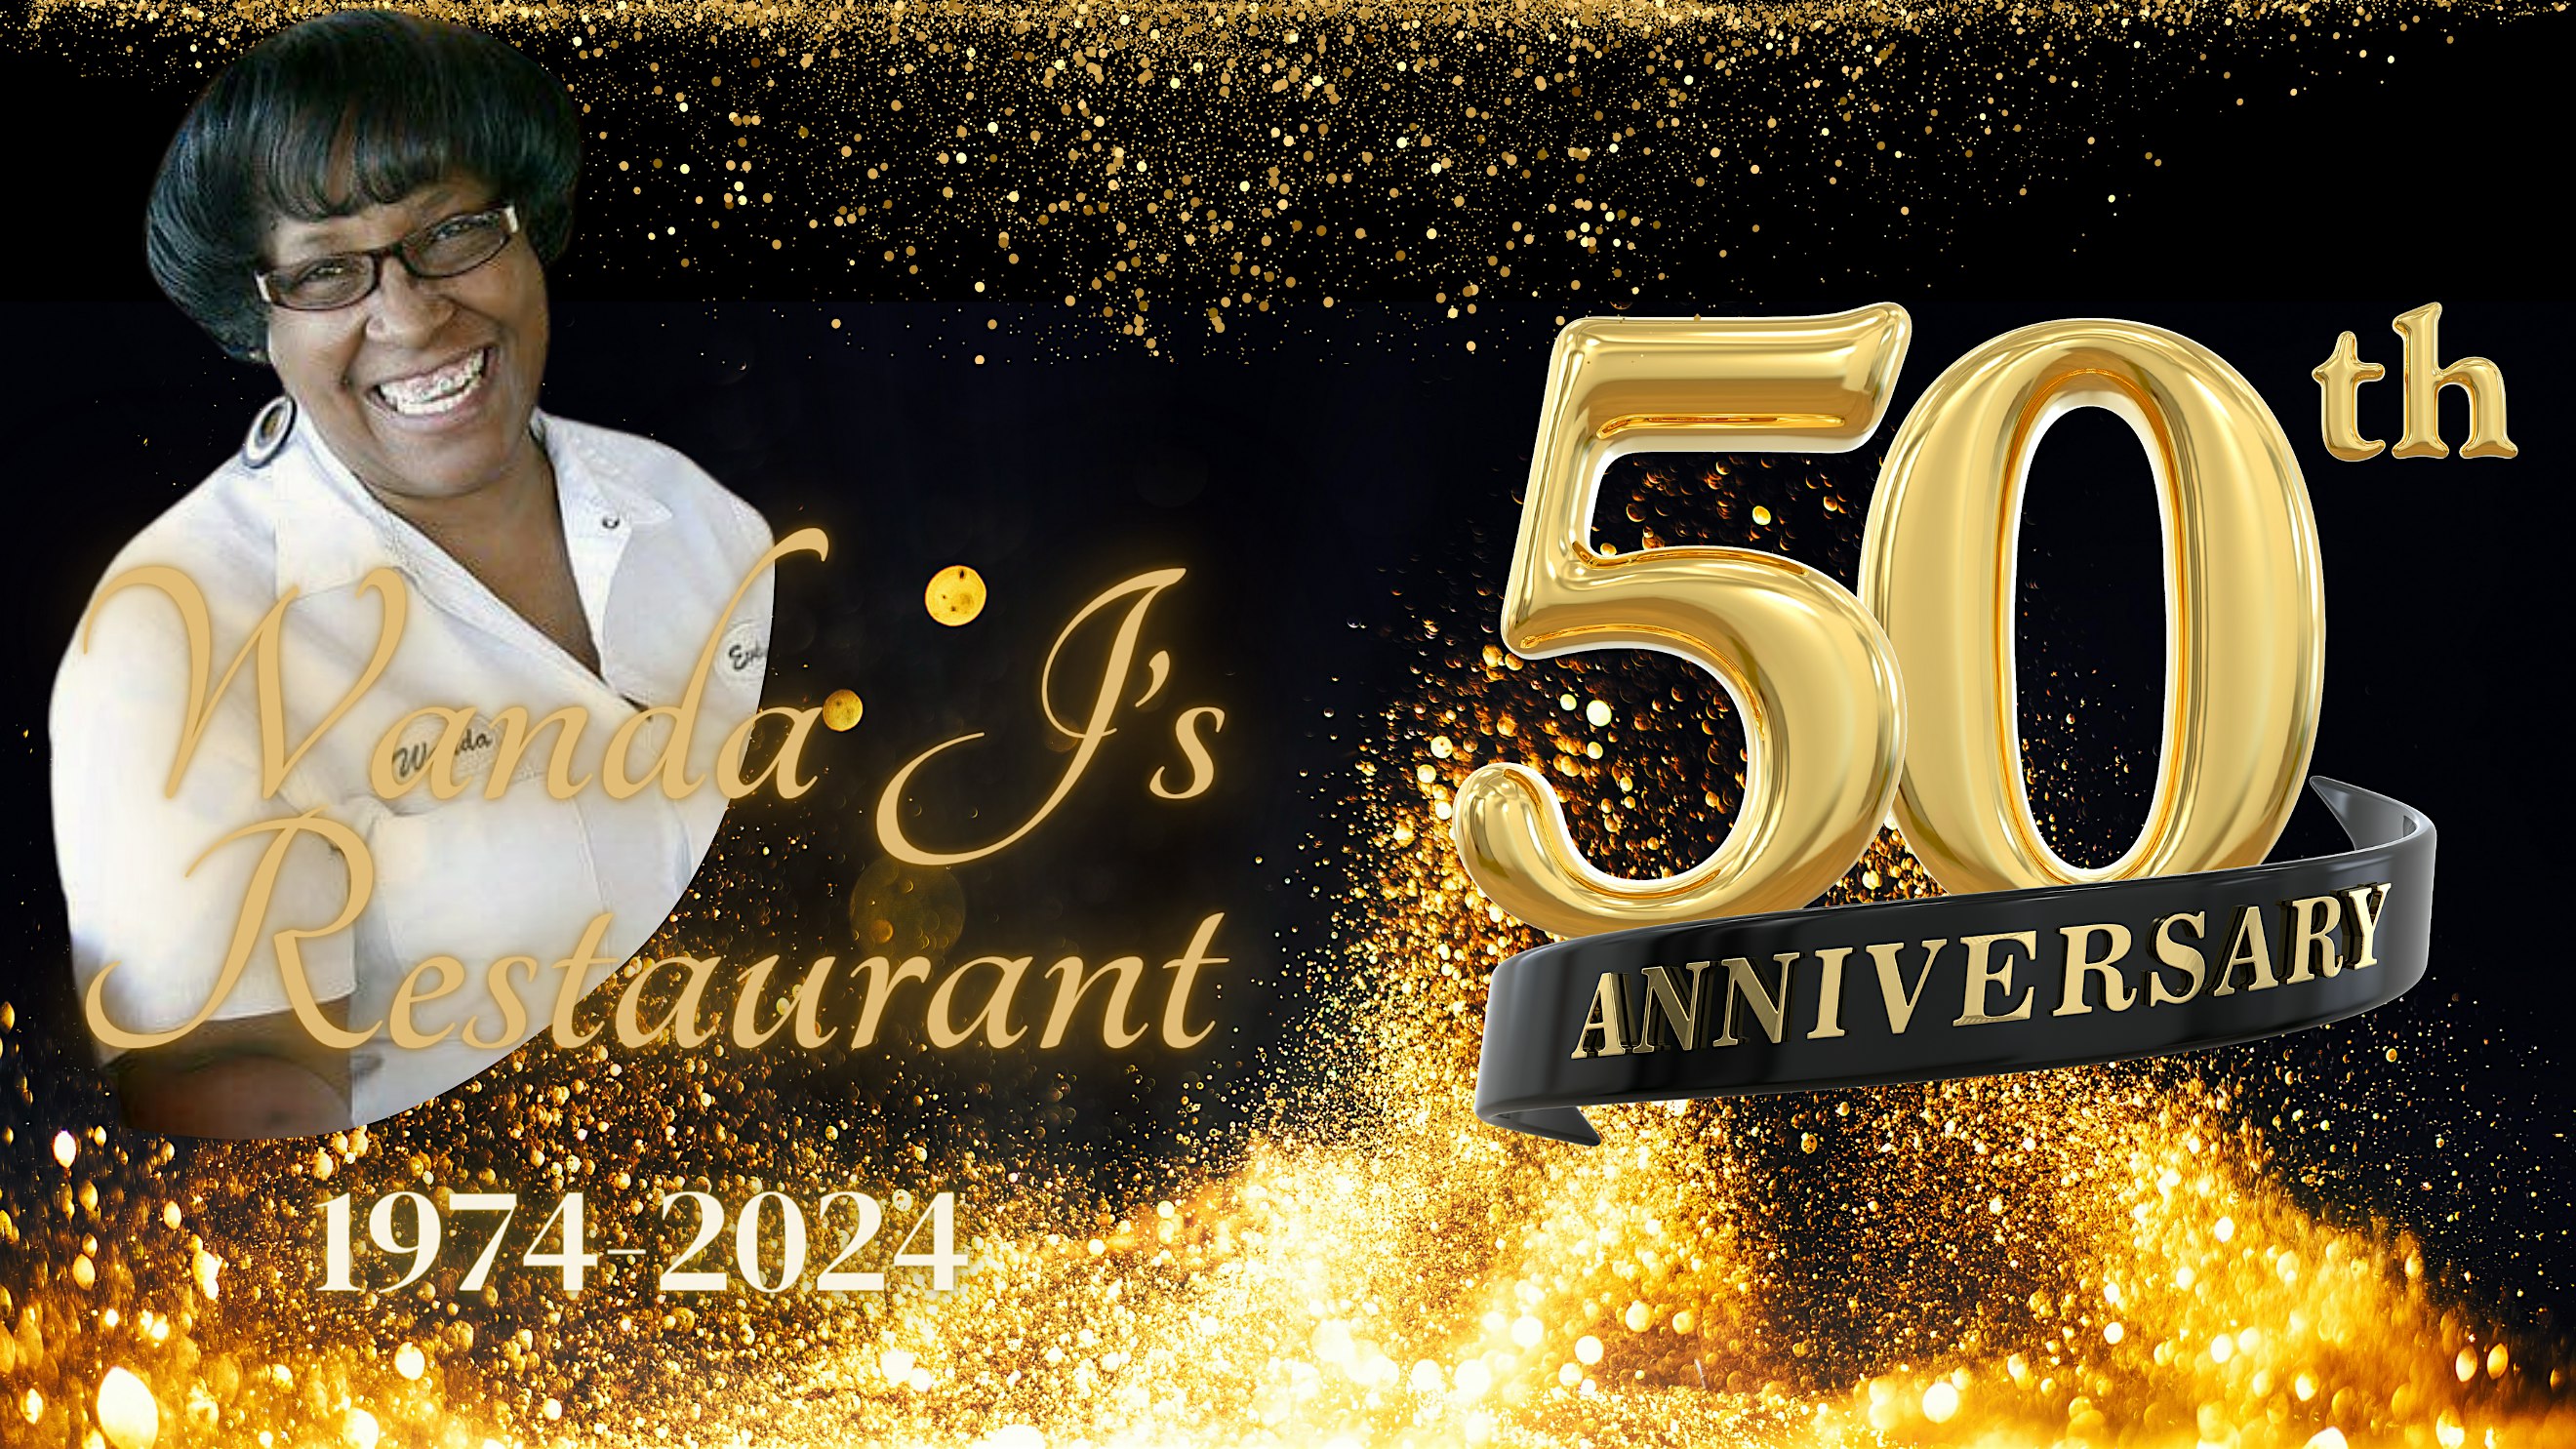 Wanda J's Restaurant 50th Anniversary